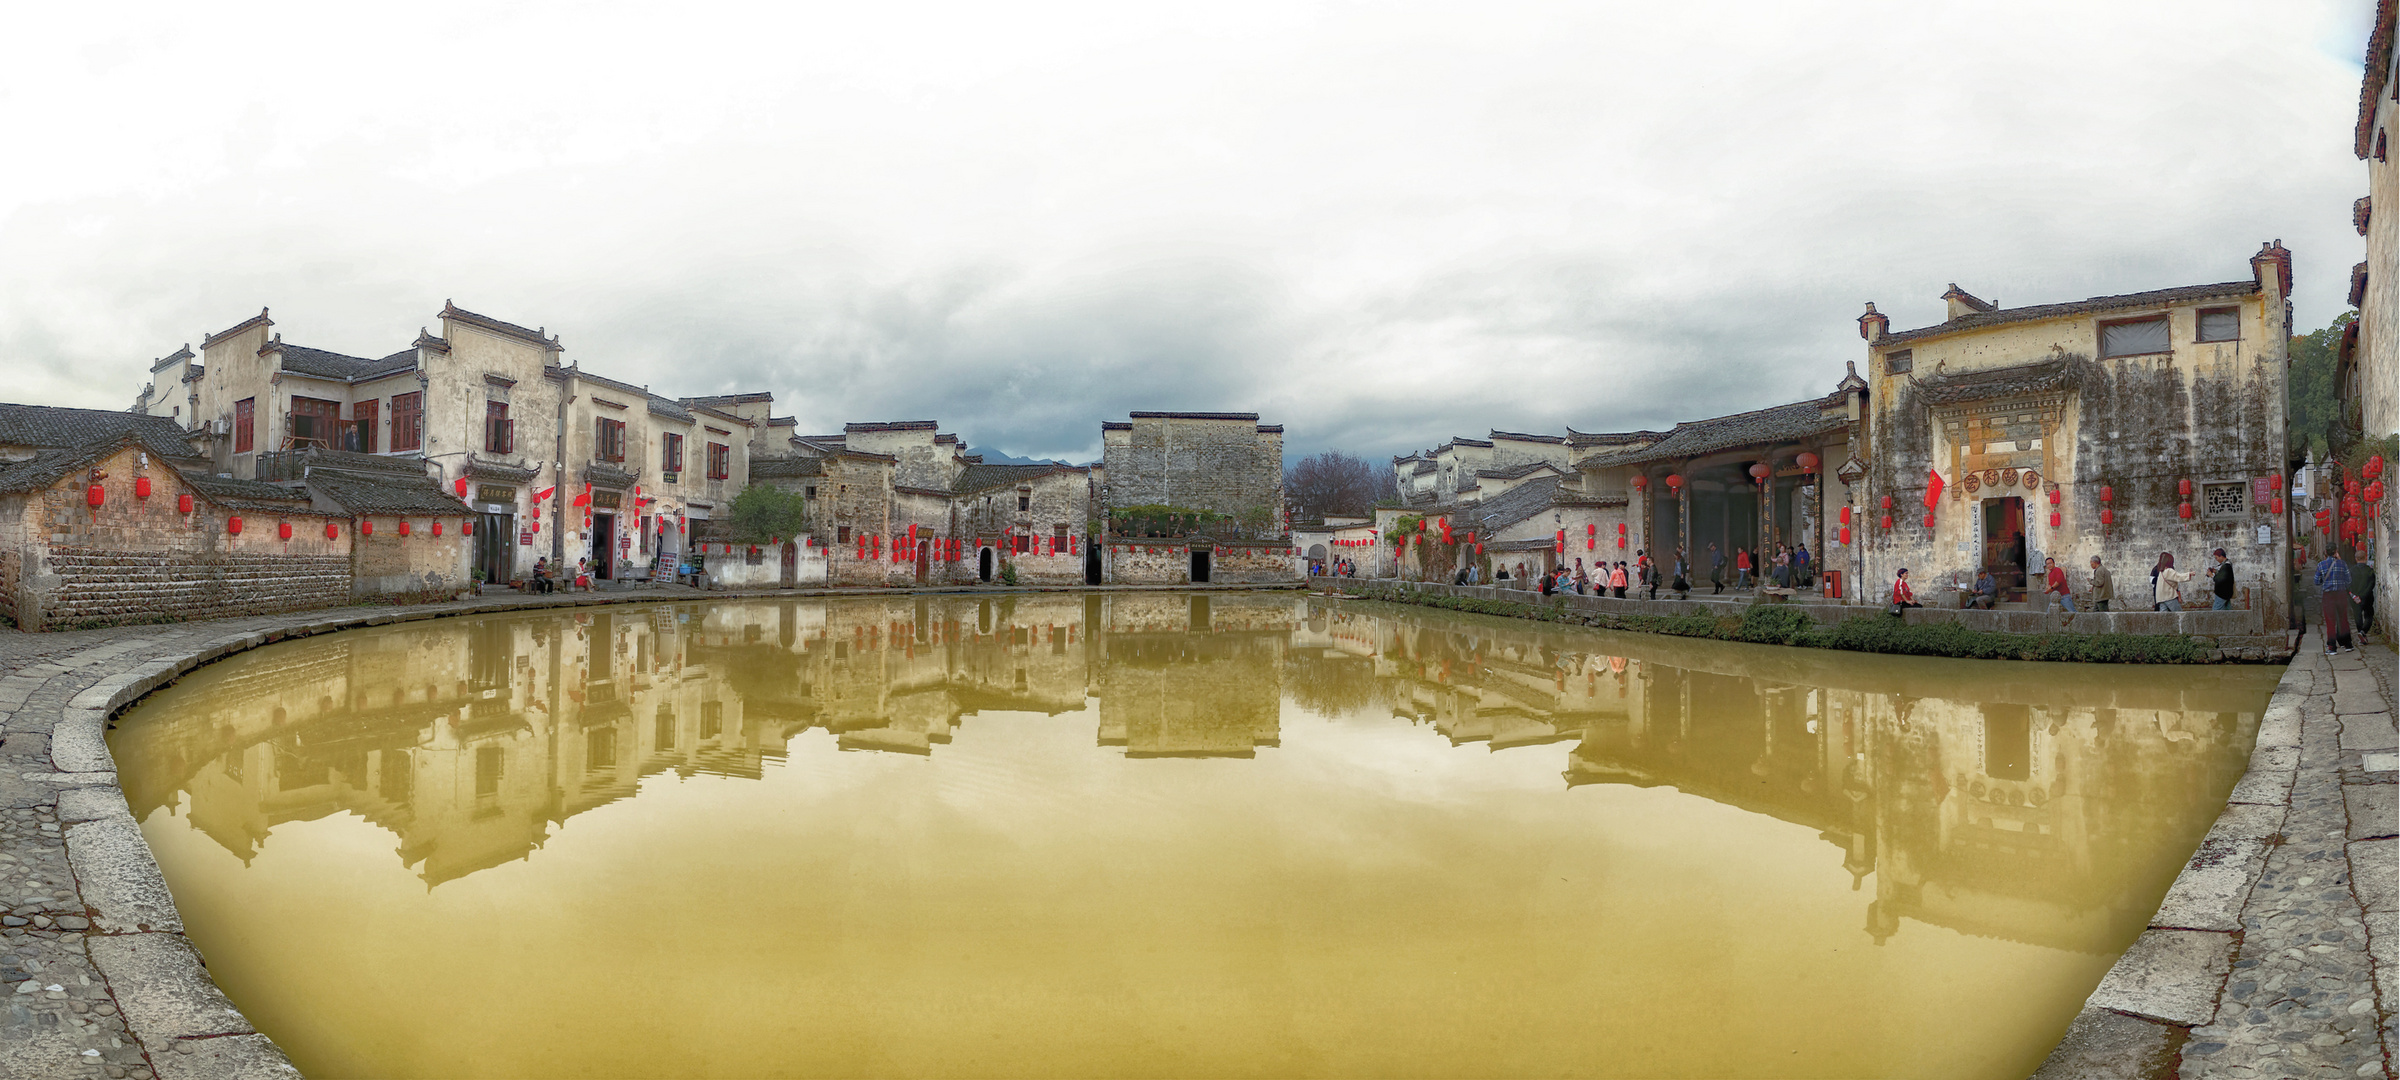 Huangshan, Anhui Provinz, Dorf Hongcun, China